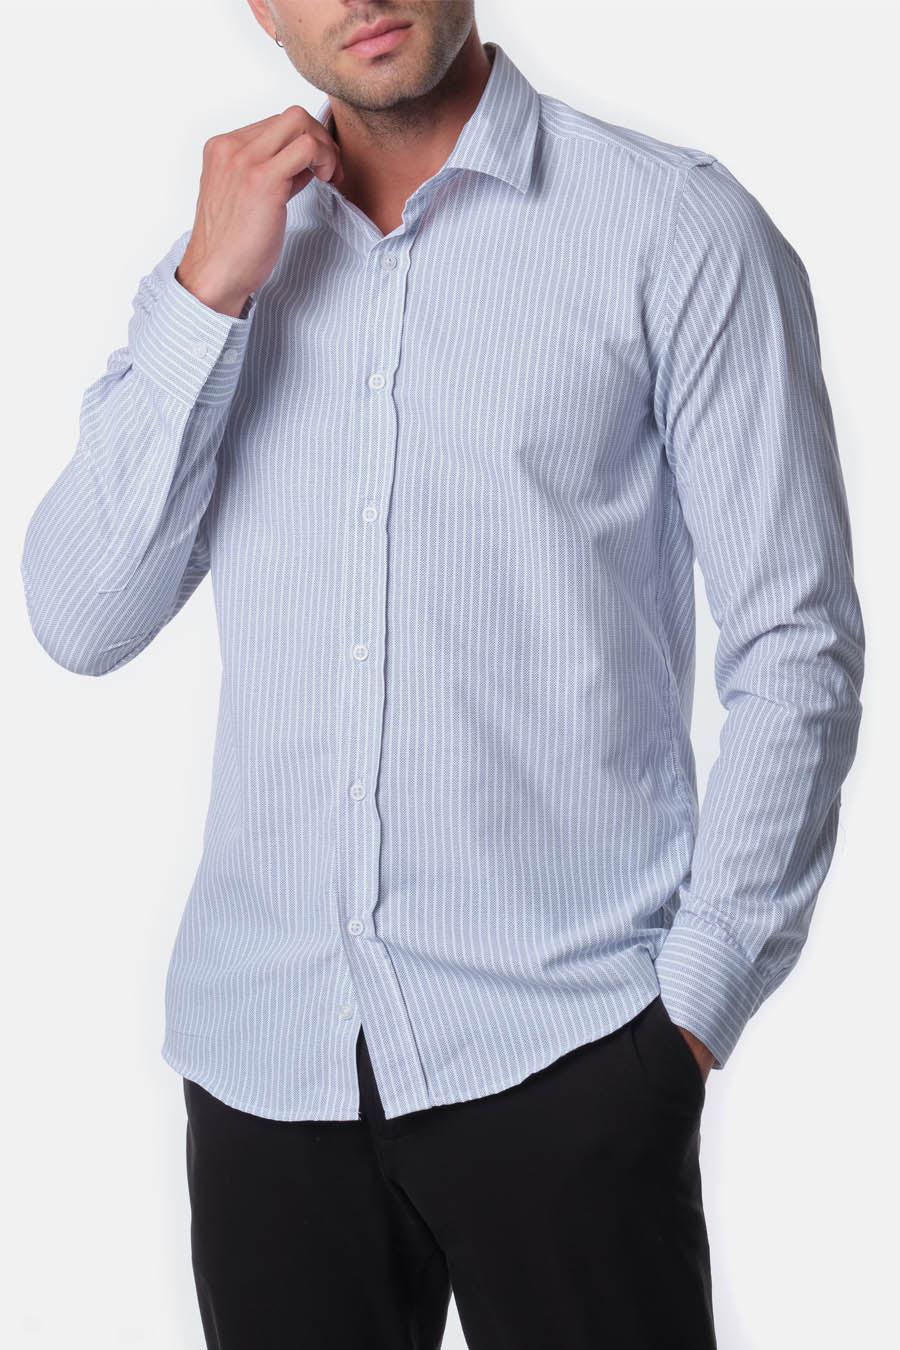 Ανδρικό πουκάμισο Keon, Λευκό/Μπλε 1